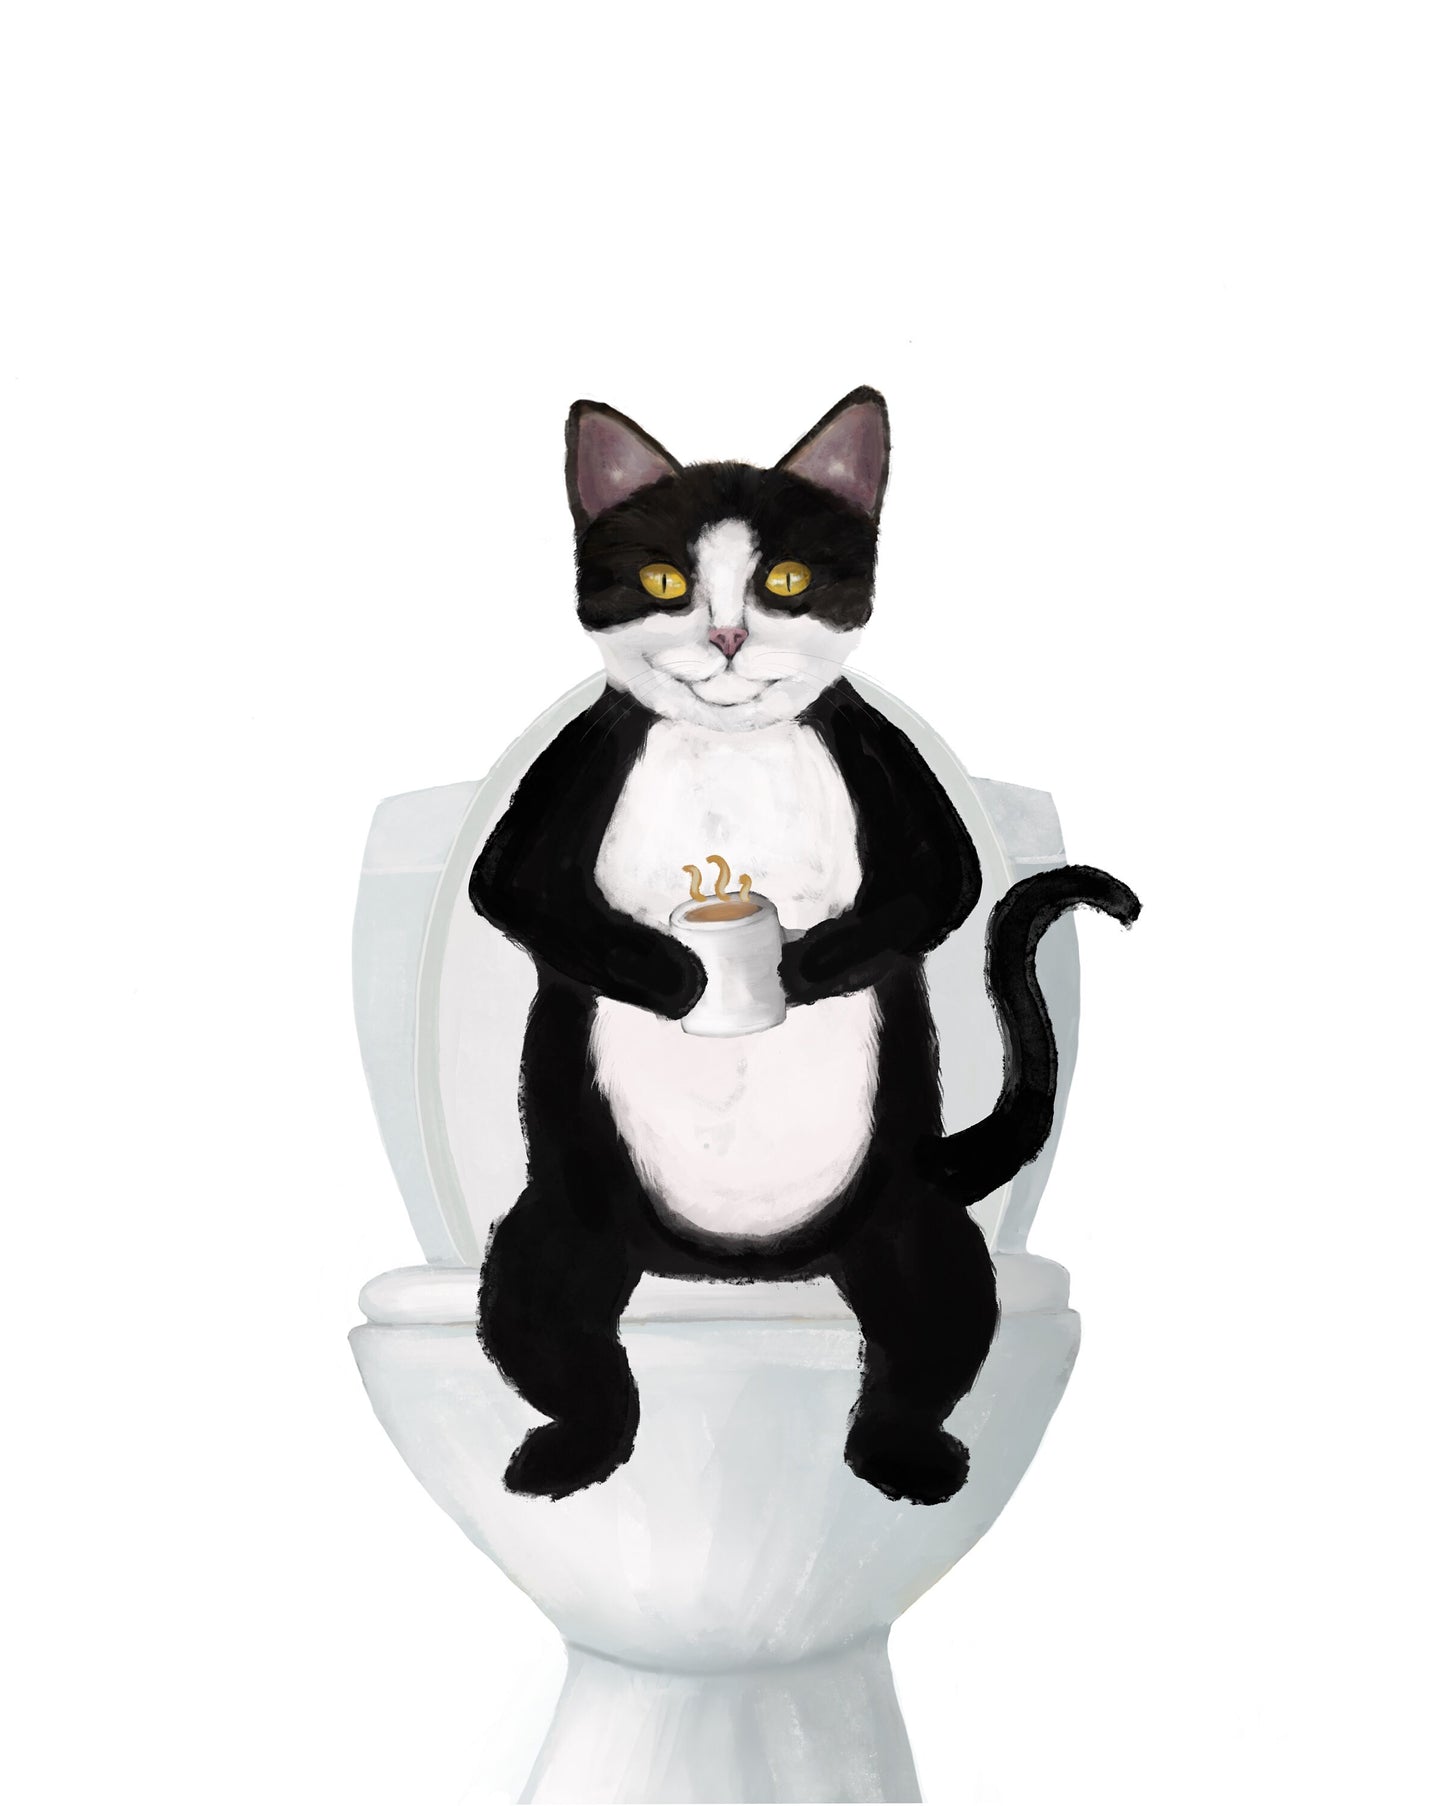 Tuxedo Cat On Toilet Print, Black and White Cat On Toilet Art, Bathroom Art, Bathroom Cat Painting, Cat On Toilet Print, Cat Lover Gift